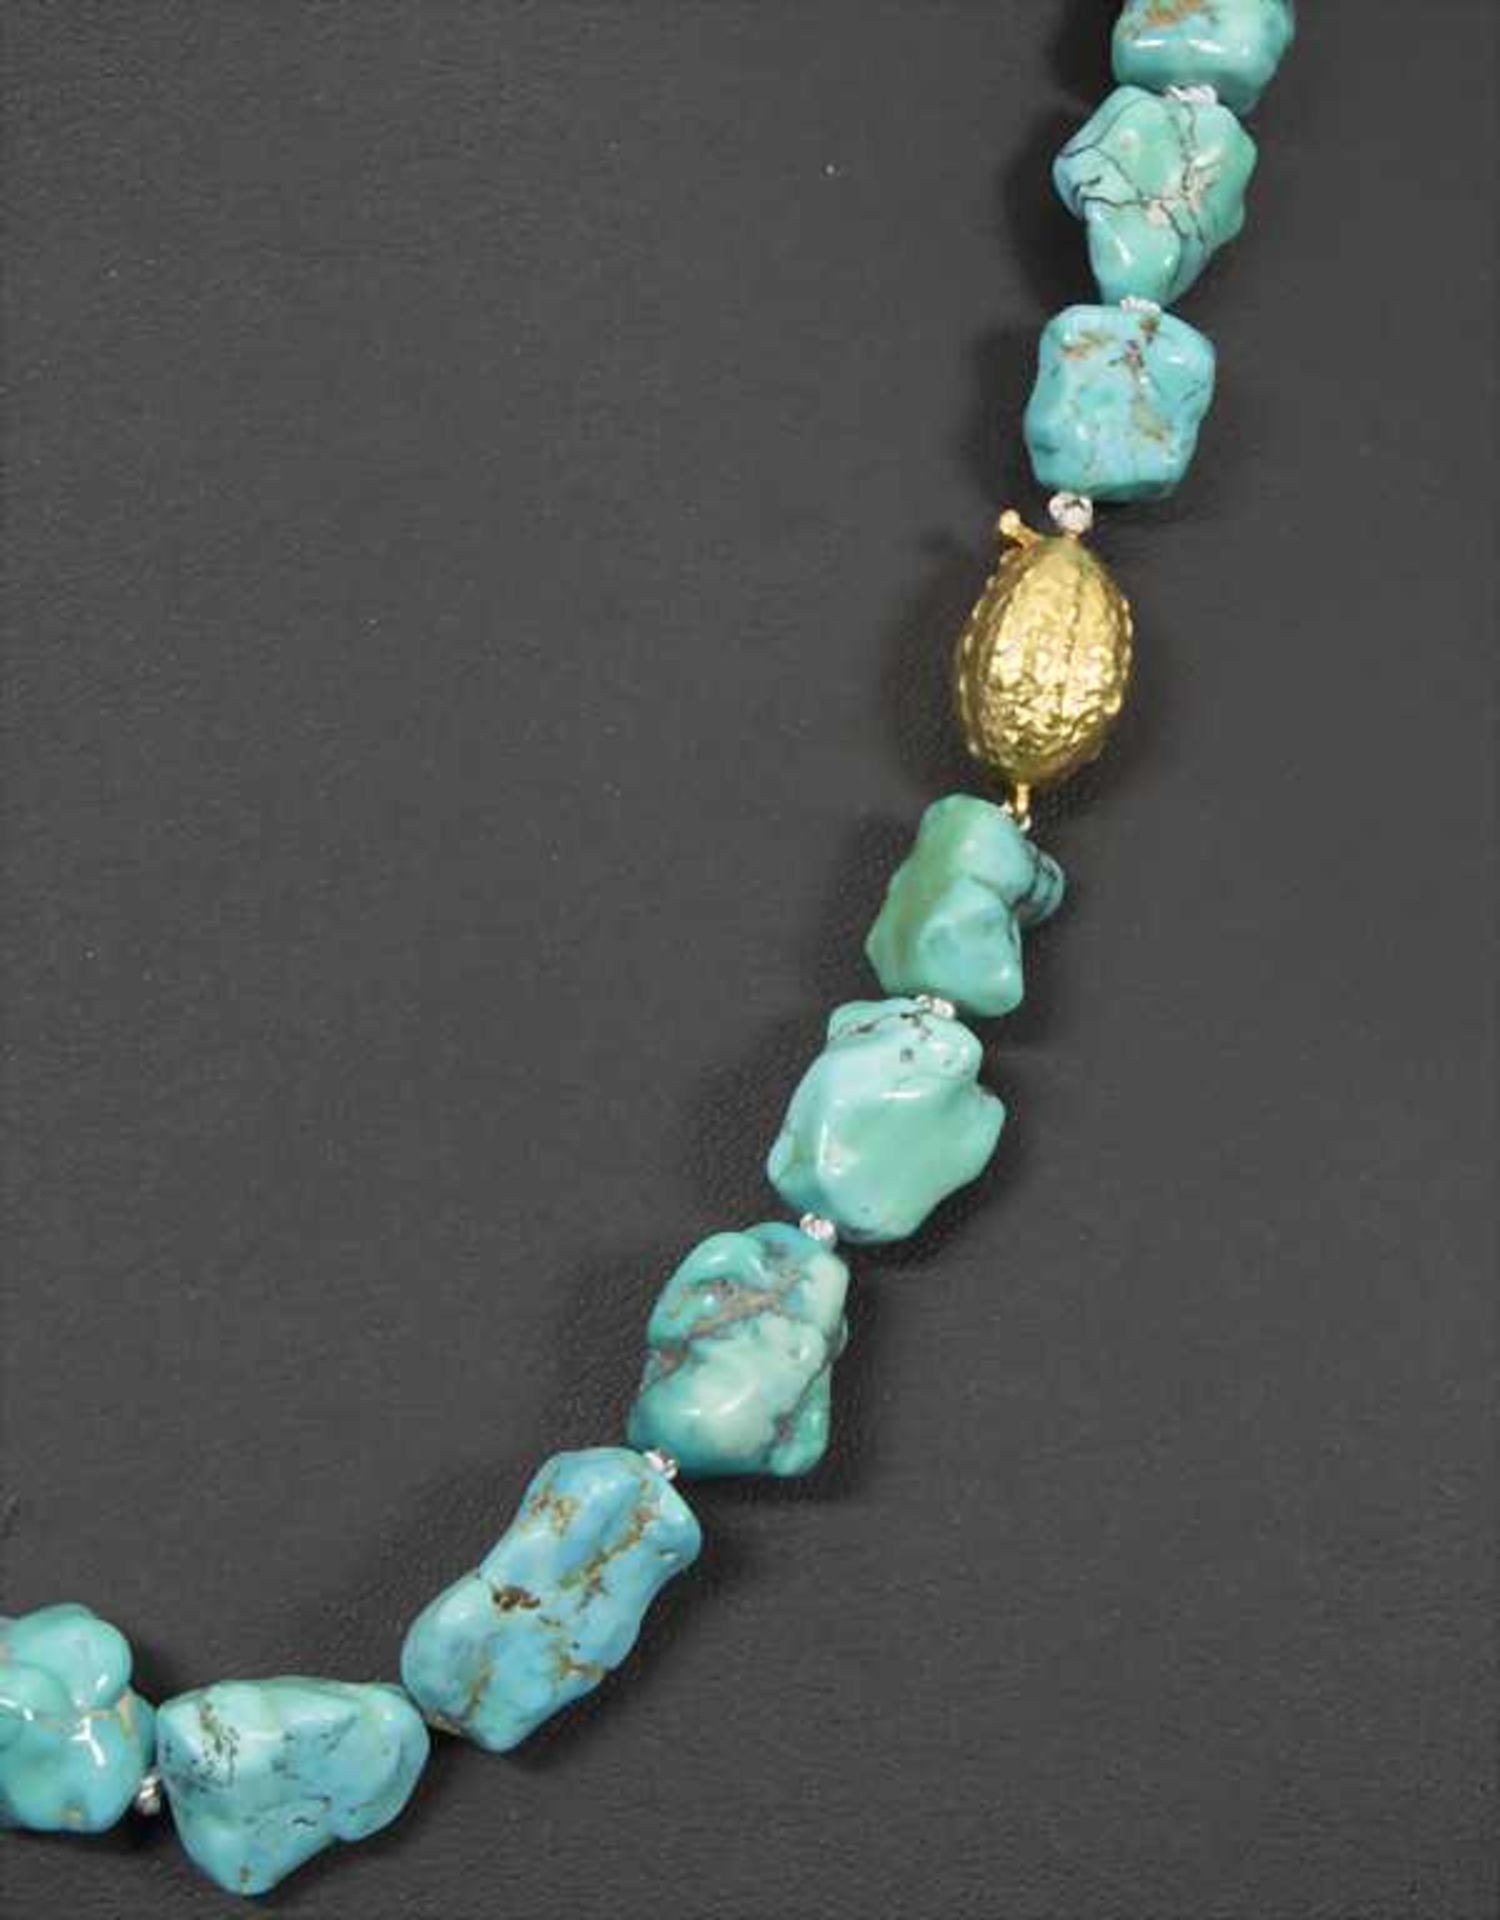 Türkis Halskette / A turquoise necklaceMaterial: 30 Türkis-Steine (Durchmesser 12 bis 24 mm), - Image 2 of 2